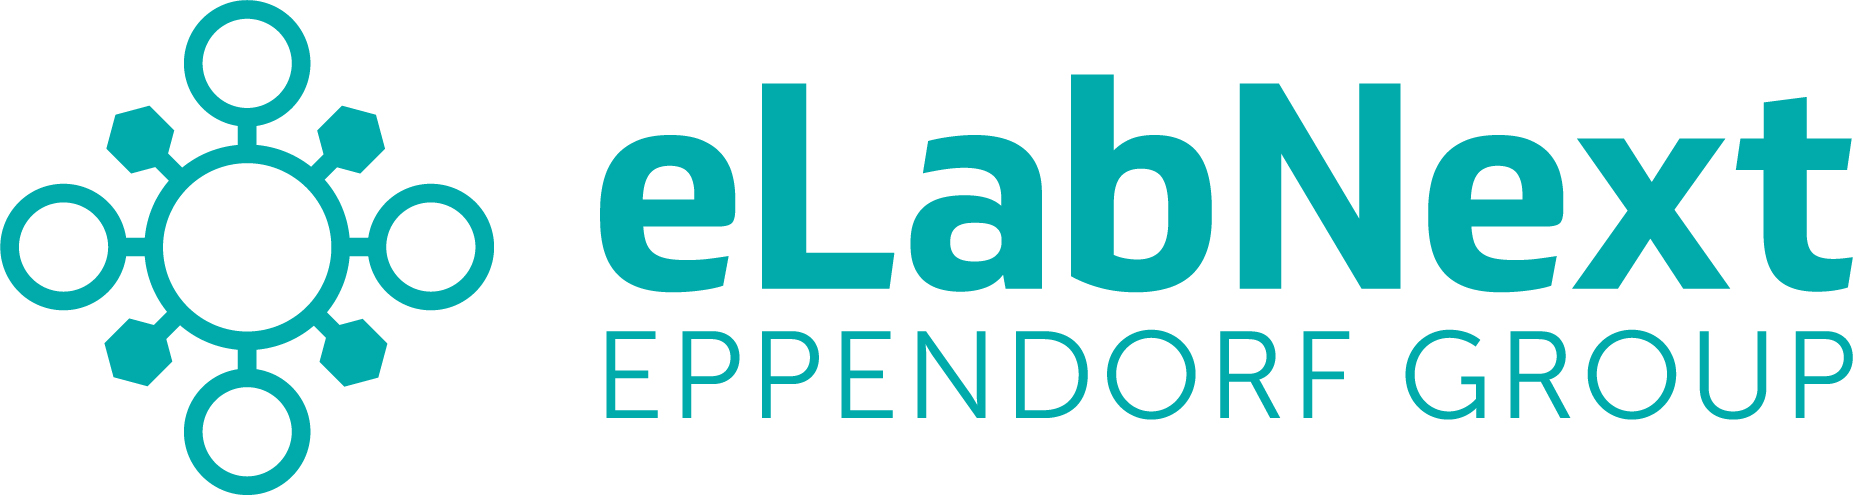 elabnext eppendorf group logo + Scientific equipment